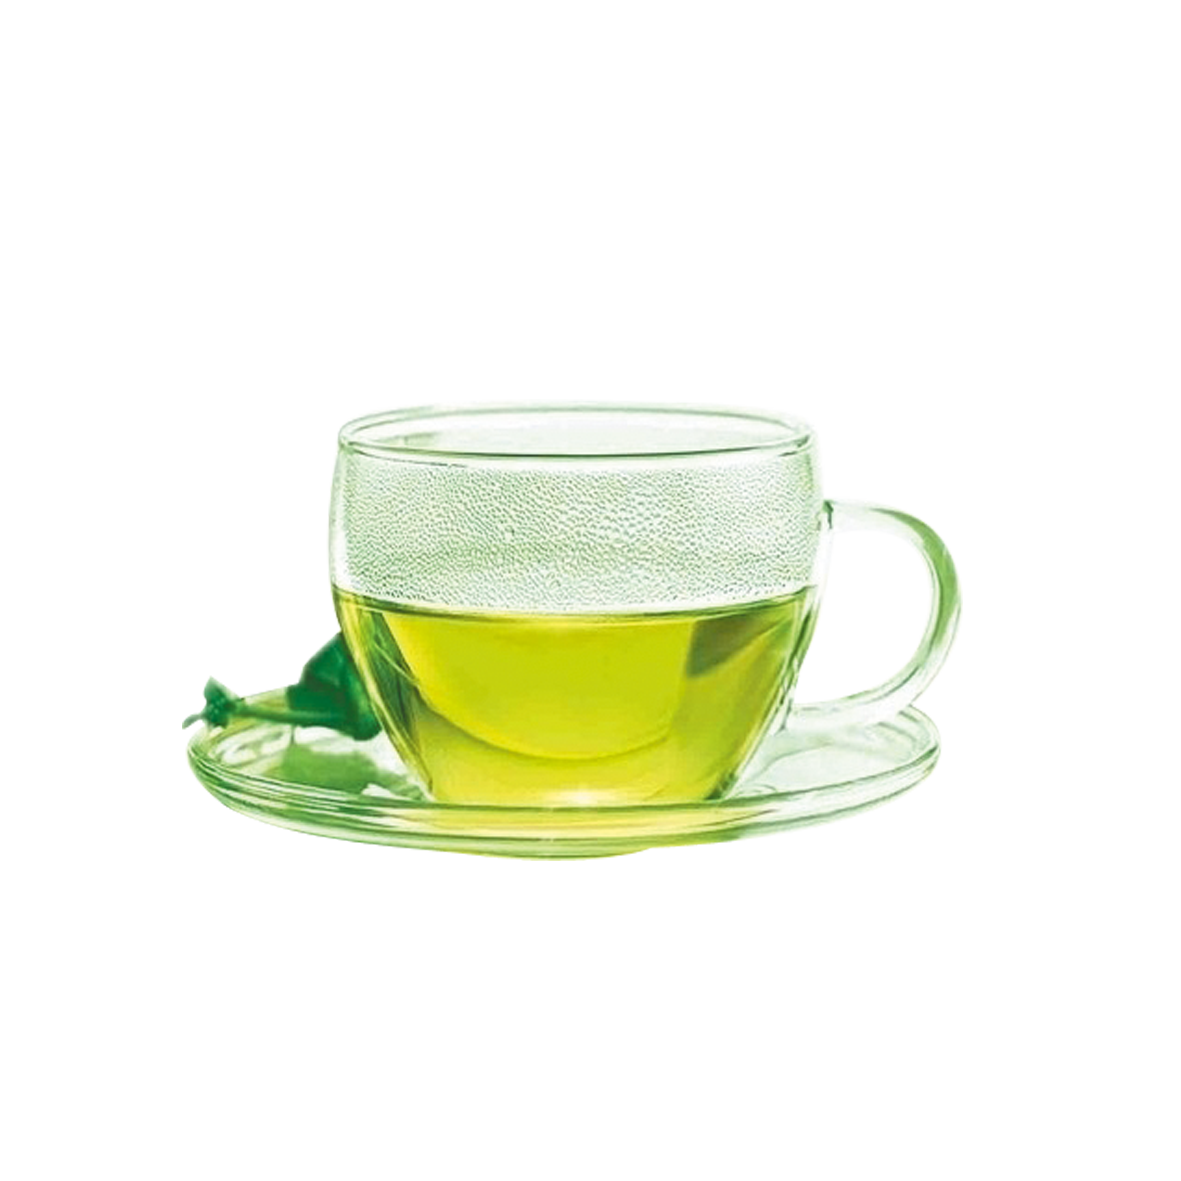 Green Imagem Transparente do chá.